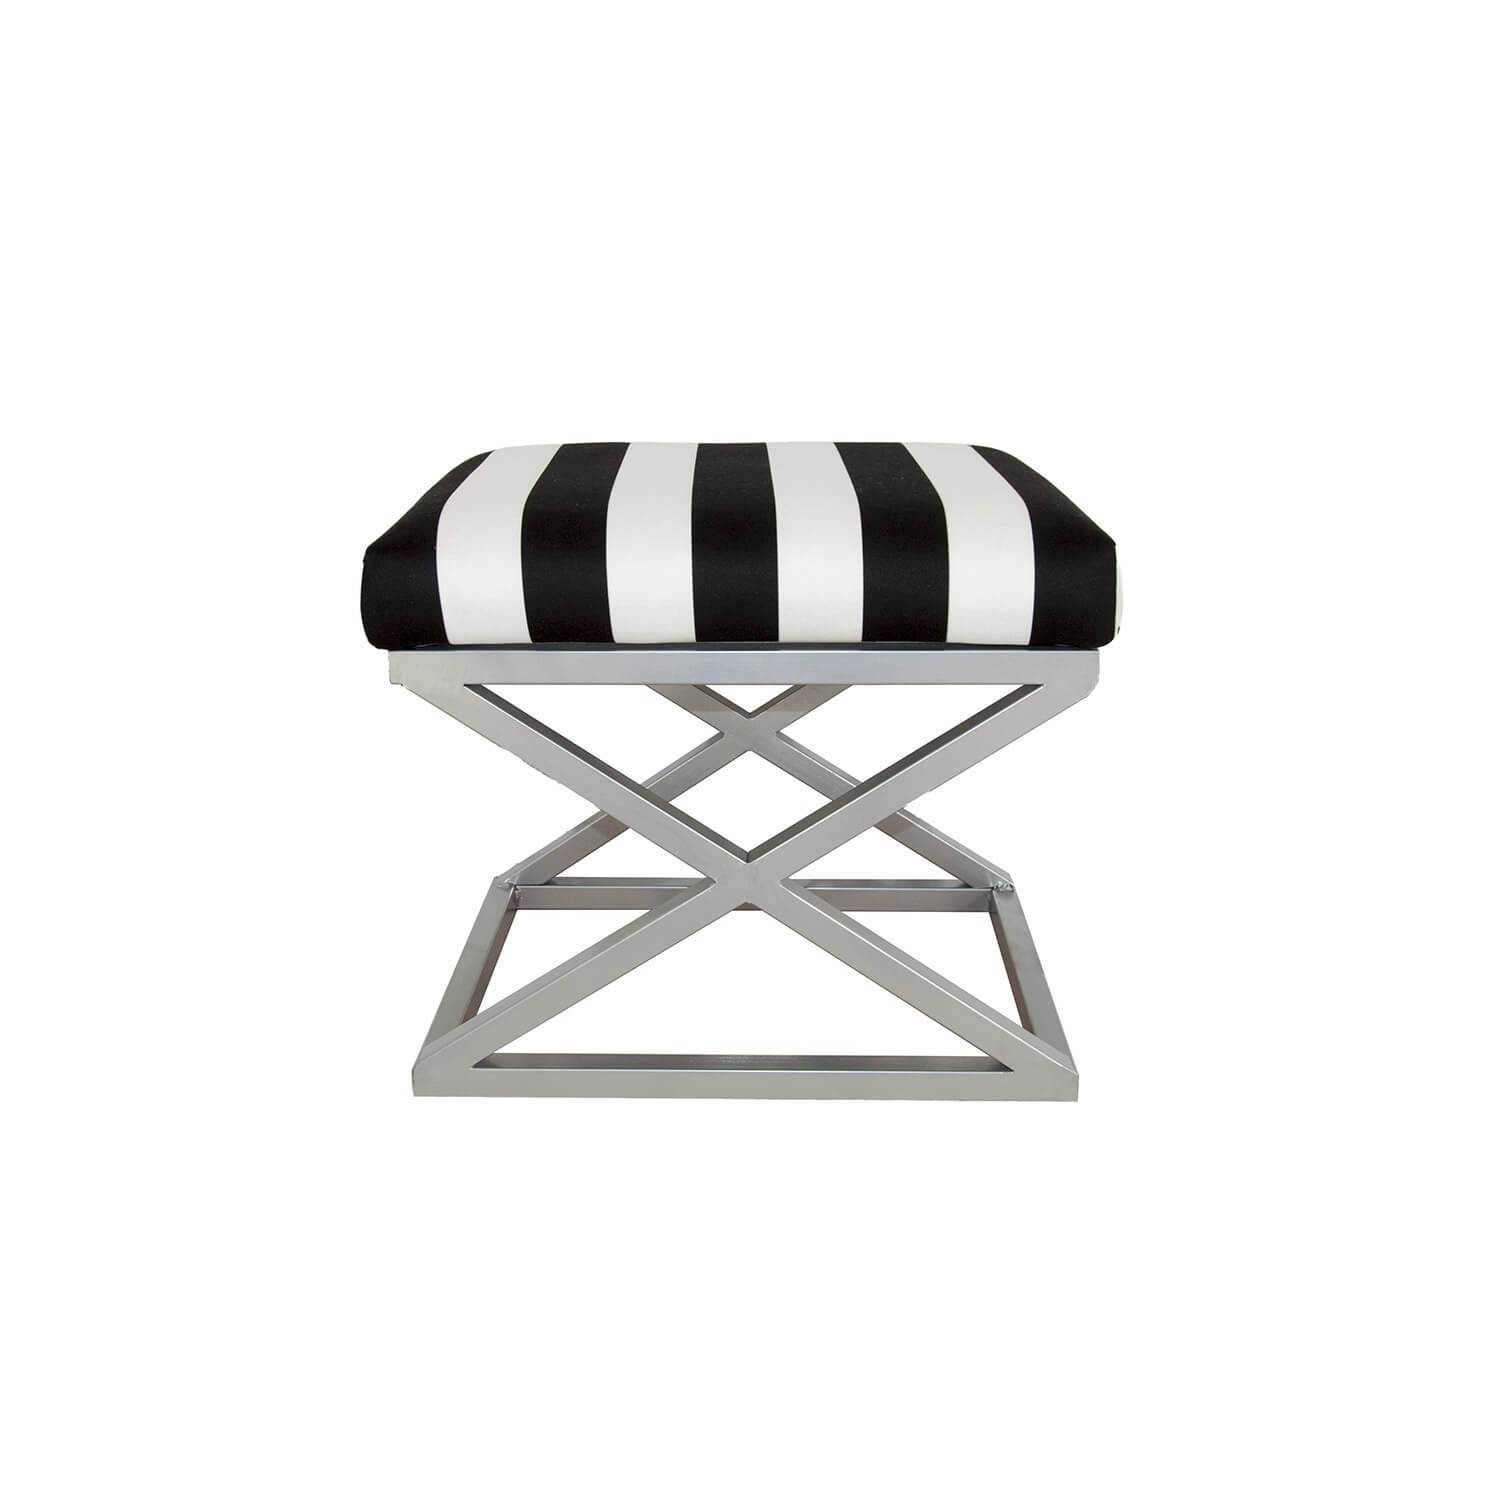 Amida kruk in industriële stijl Zilverkleurig metaal en fluweel Zwart-wit streeppatroon